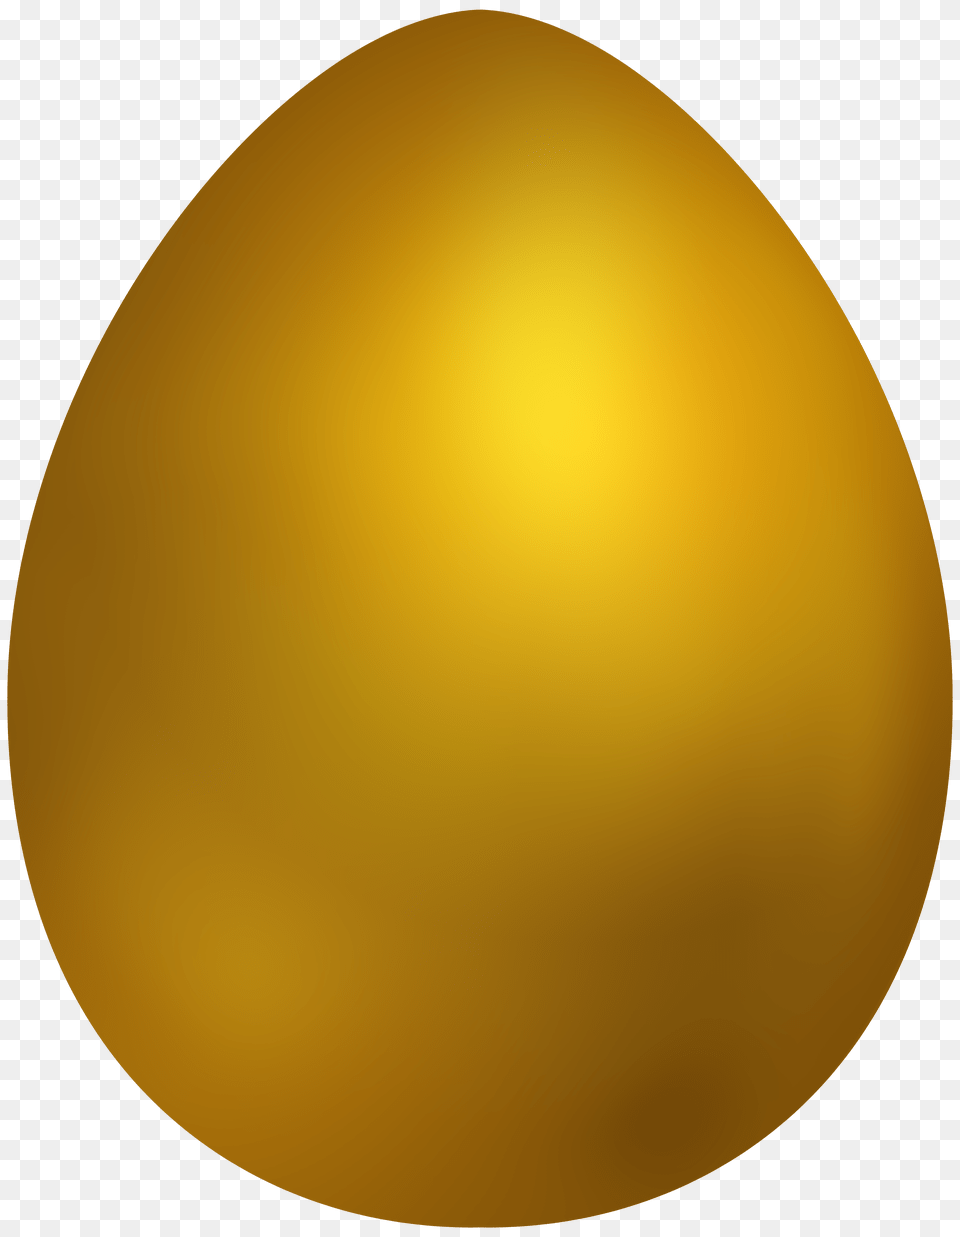 Gold Easter Egg Clip Art Clip Art, Food, Easter Egg Free Transparent Png